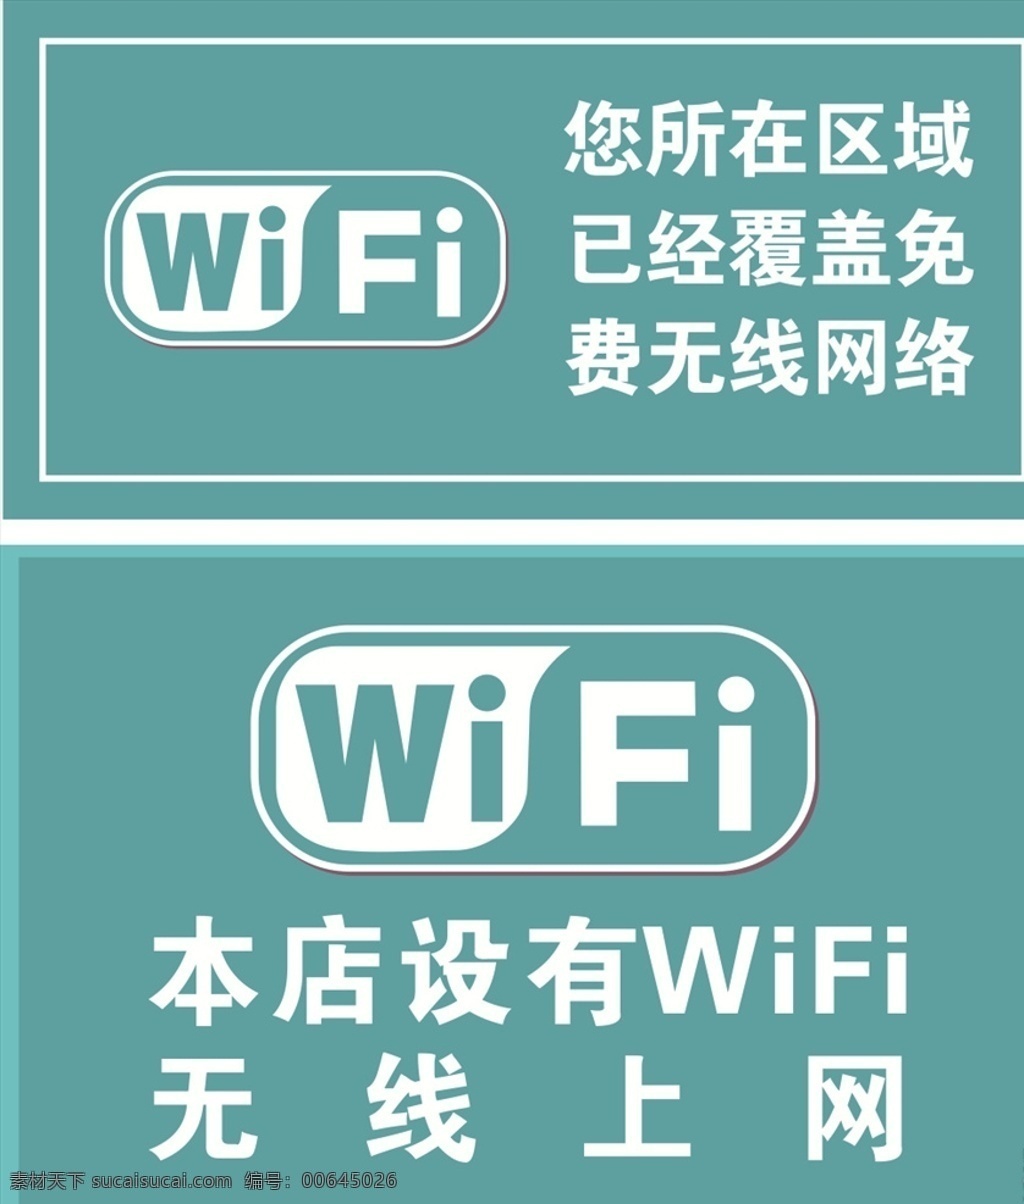 无线网络 wlan 已 覆盖 wifi覆盖 网络覆盖 各种 无线 wifi 水果店 石头墙 生锈铁板 金丝绒底板 网络 无线网